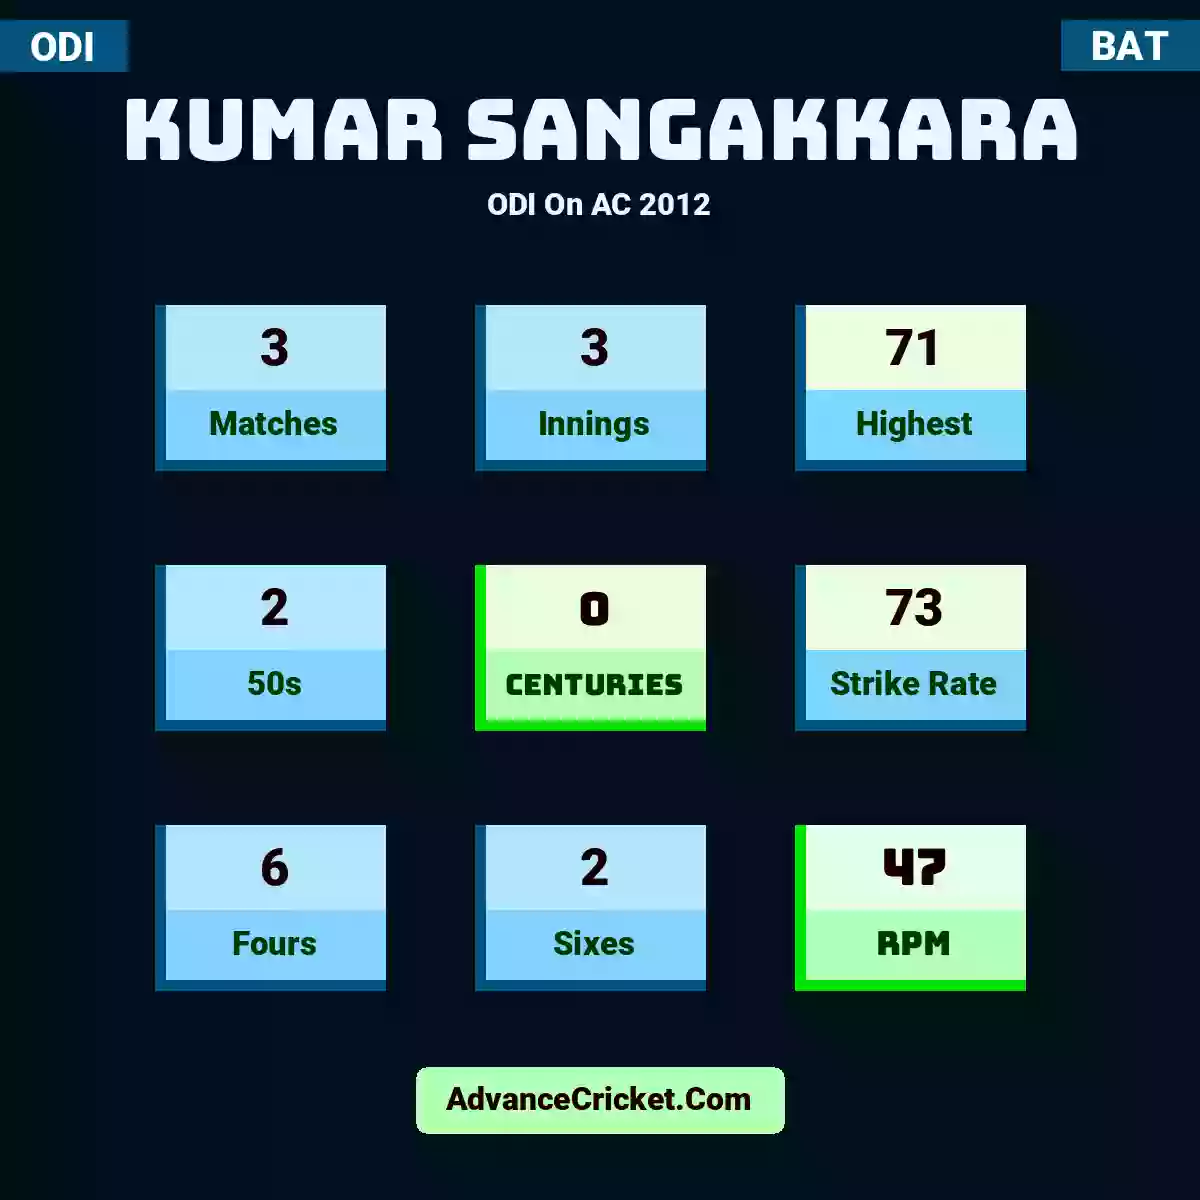 Kumar Sangakkara ODI  On AC 2012, Kumar Sangakkara played 3 matches, scored 71 runs as highest, 2 half-centuries, and 0 centuries, with a strike rate of 73. K.Sangakkara hit 6 fours and 2 sixes, with an RPM of 47.